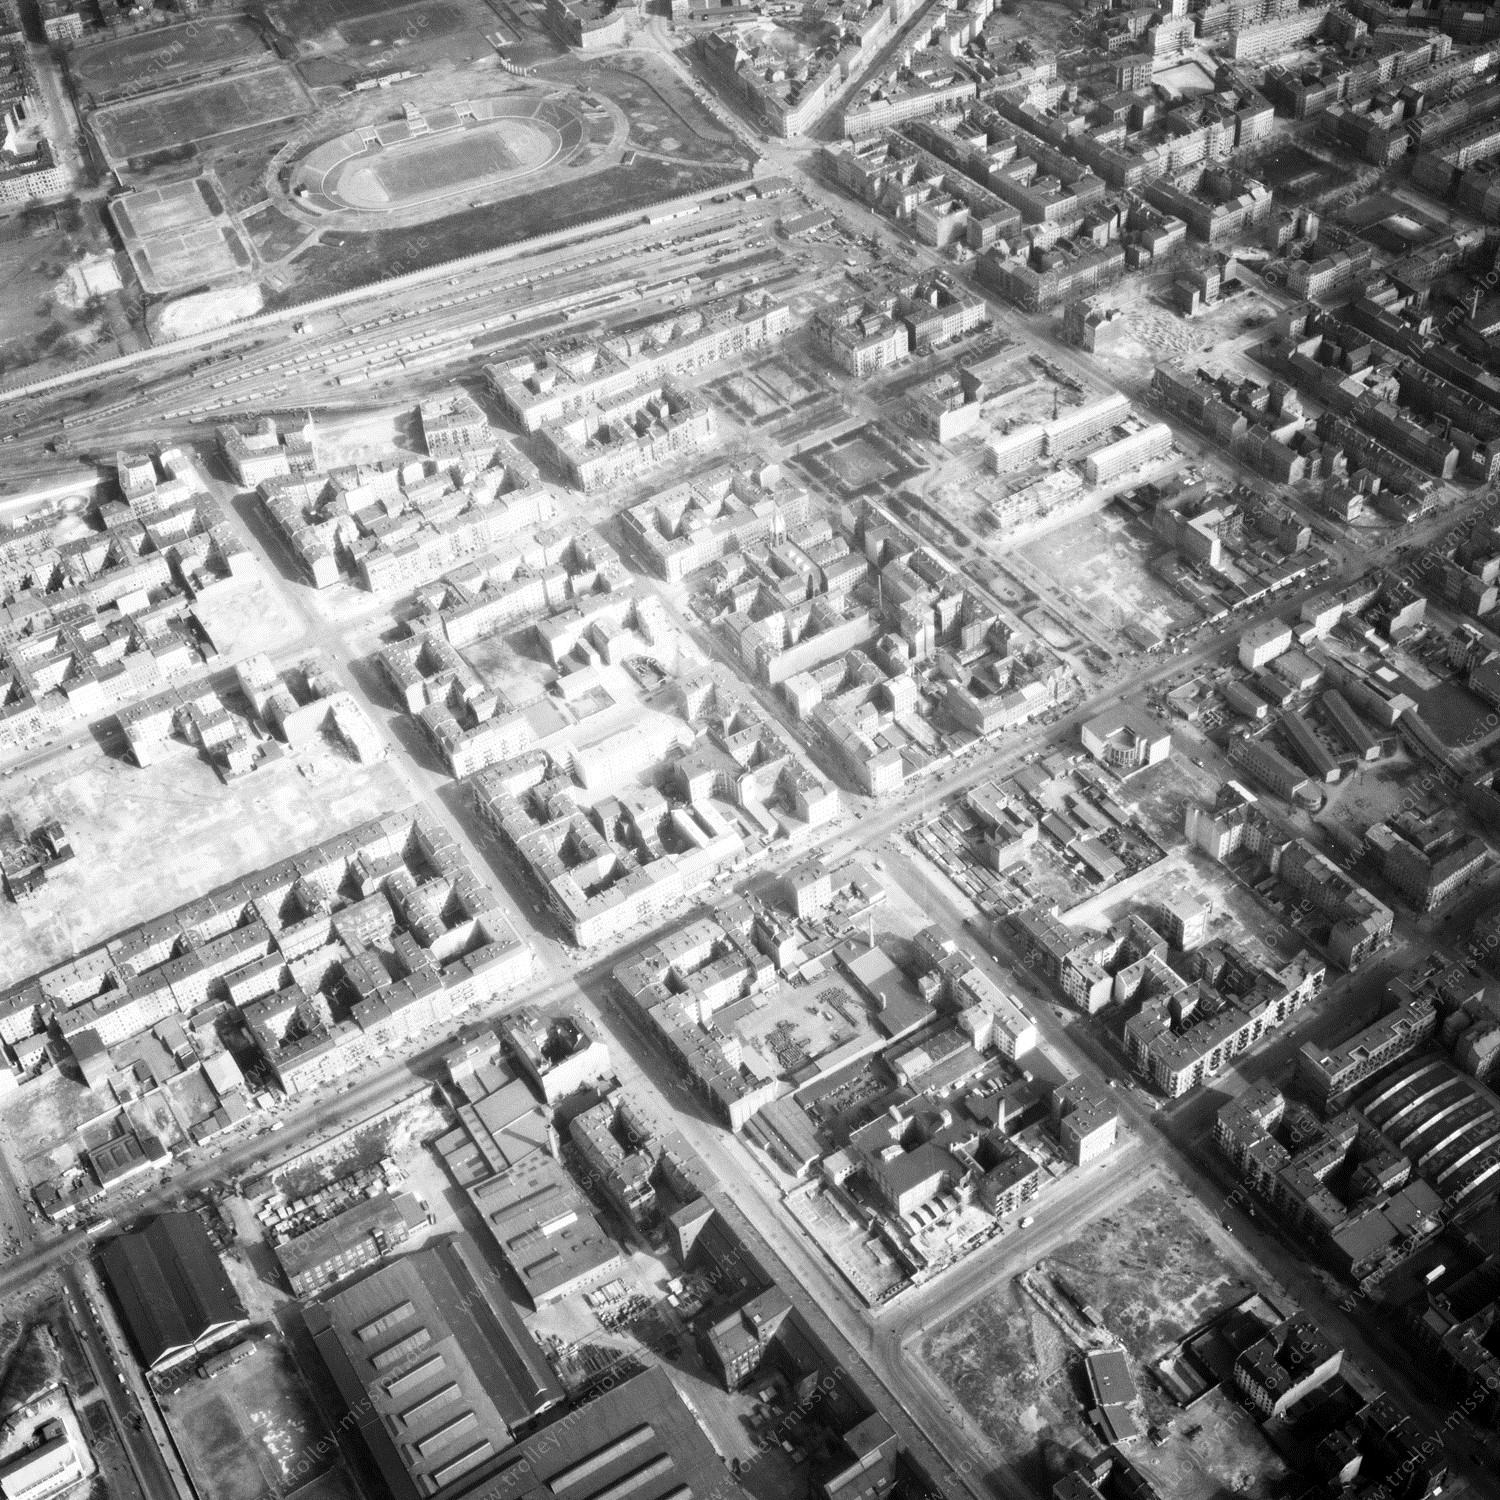 Alte Fotos und Luftbilder von Berlin - Luftbildaufnahme Nr. 03 - Historische Luftaufnahmen von West-Berlin aus dem Jahr 1954 - Flugstrecke Sierra